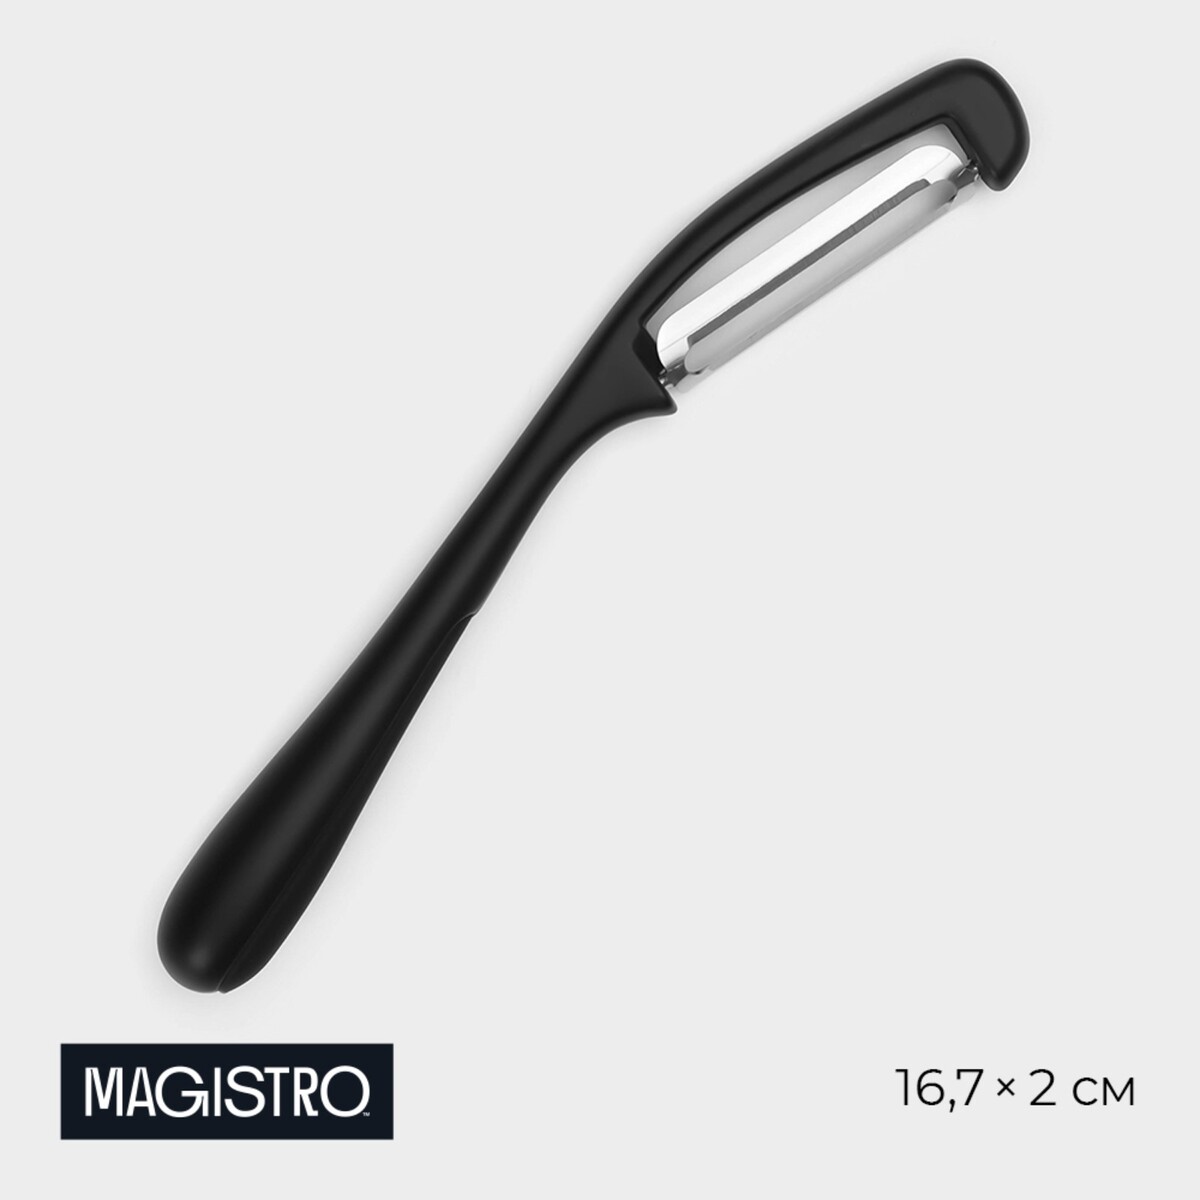 Овощечистка magistro vantablack, 16,7×2 см, вертикальная, цвет черный